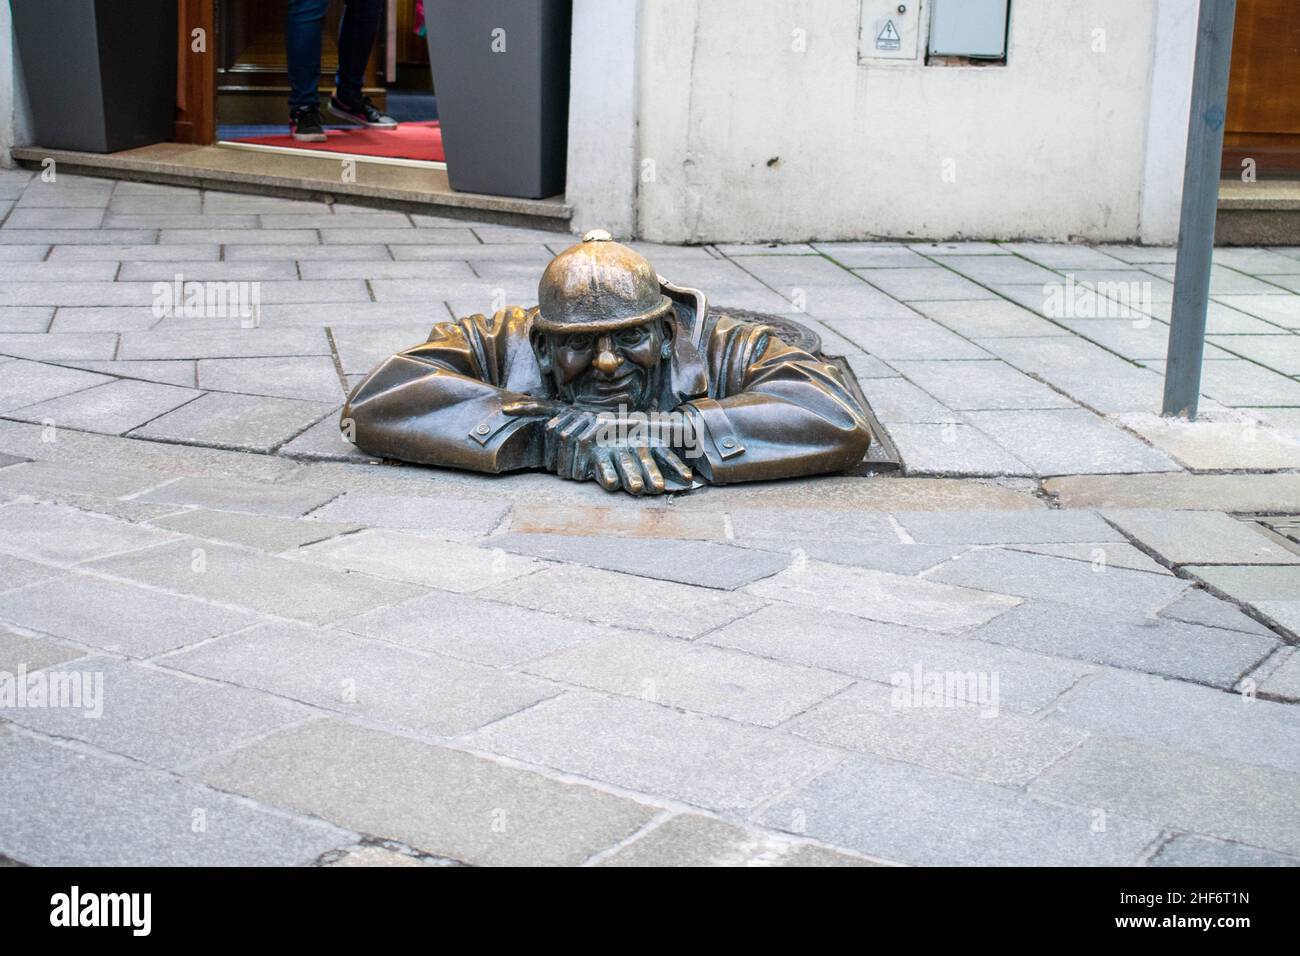 Cumil, die Statue des Mannes bei der Arbeit, aka, der Beobachter. Berühmte Skulptur in Bratislava, Slowenien, die einen Abwasserarbeiter zeigt, der aus einem Schachtloch auf der Passe guckt Stockfoto